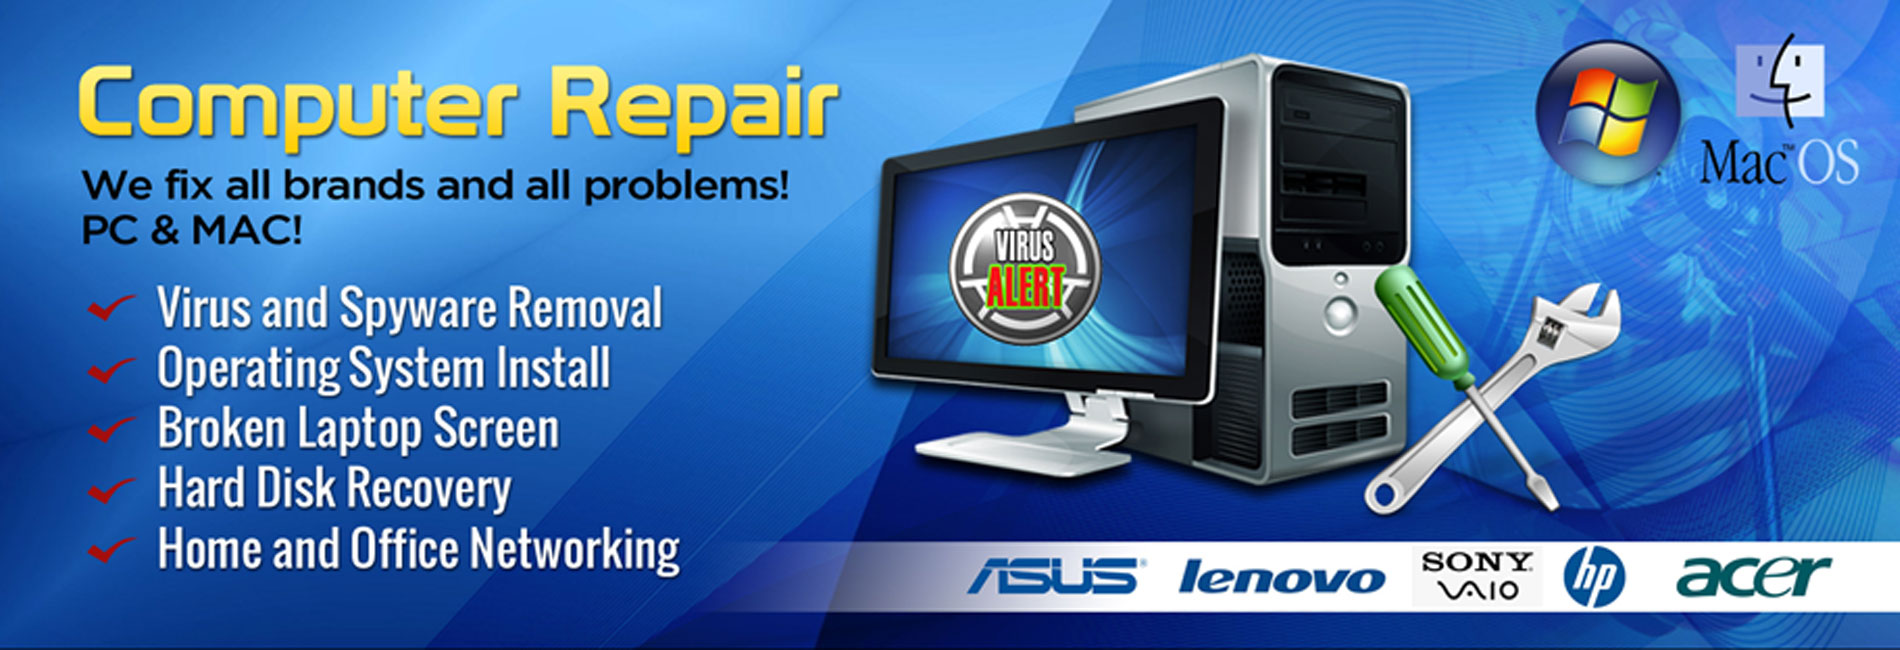 PC Repair Services |Cheap Computer Repairs | PC Fix Near ...